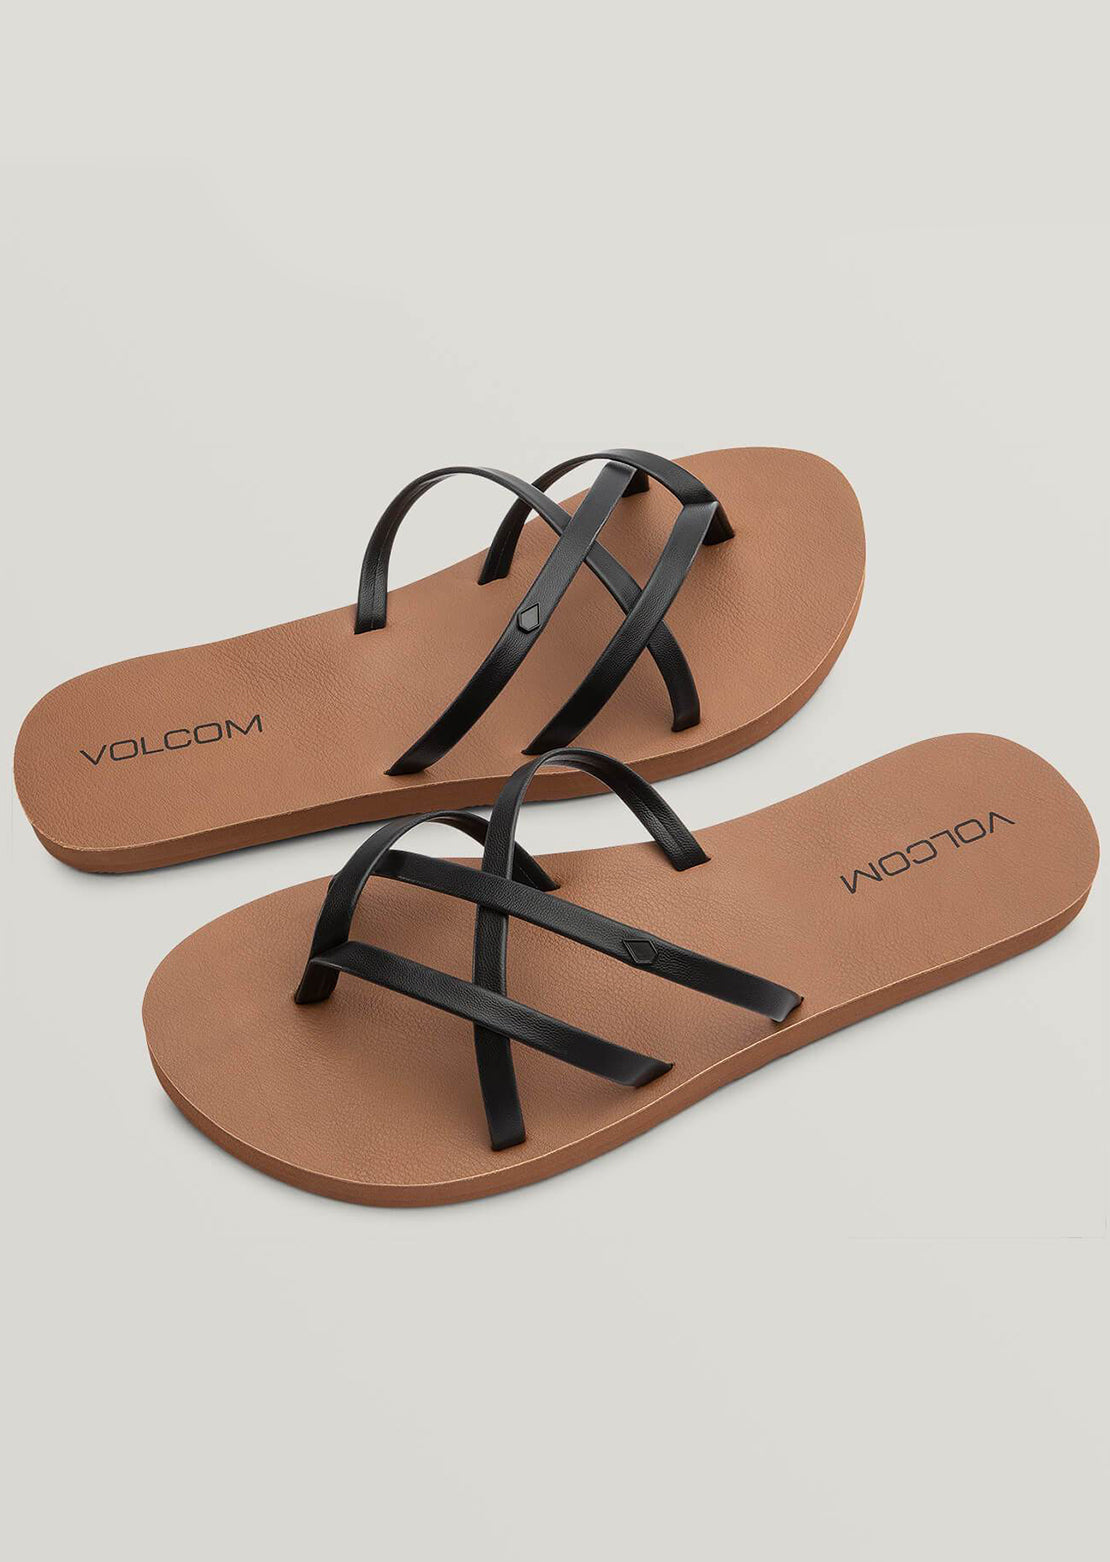 Volcom Women&#39;s New School II Sandals Black